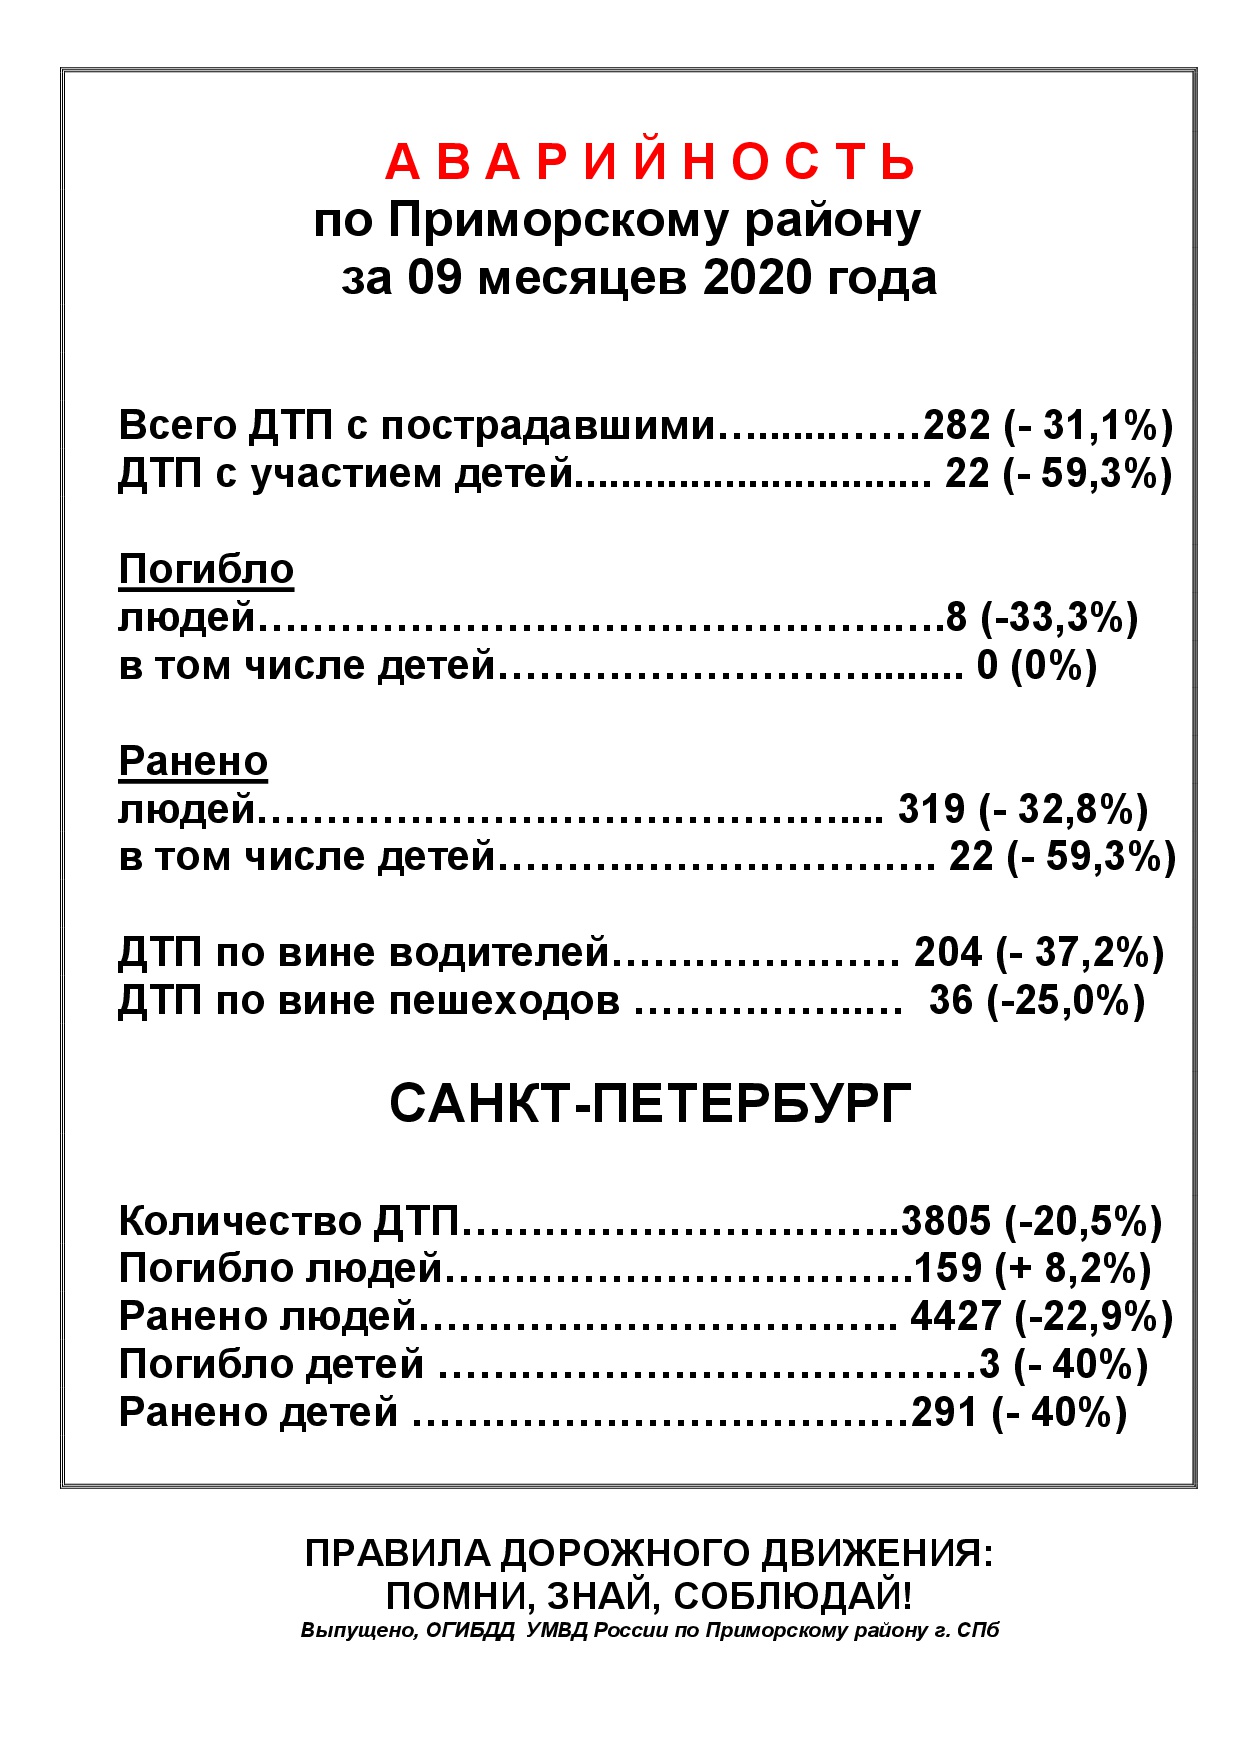 Аварийность по Приморскому району за 9 месяцев 2020 года